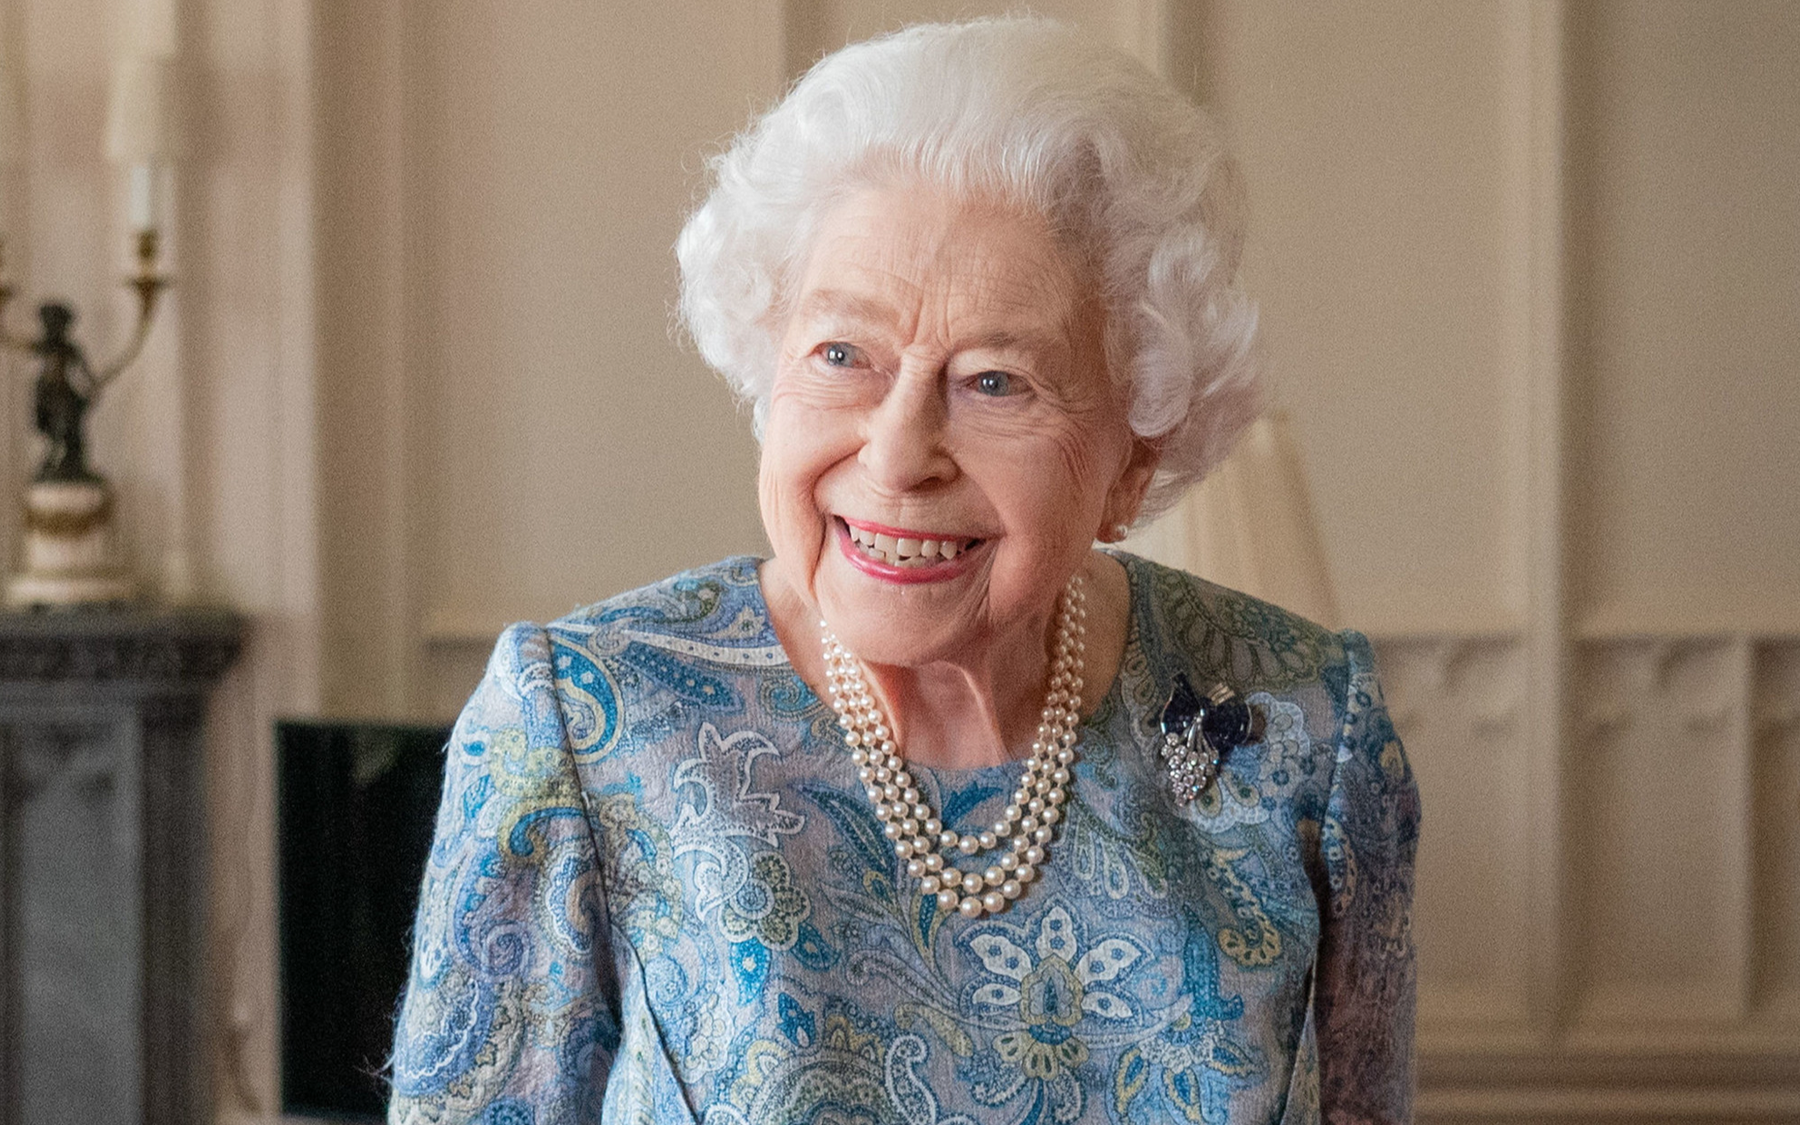 Câu chuyện về giờ phút cuối cùng của Nữ vương Elizabeth: Mọi chi tiết dù là nhỏ nhất đều được lên kế hoạch hoàn hảo